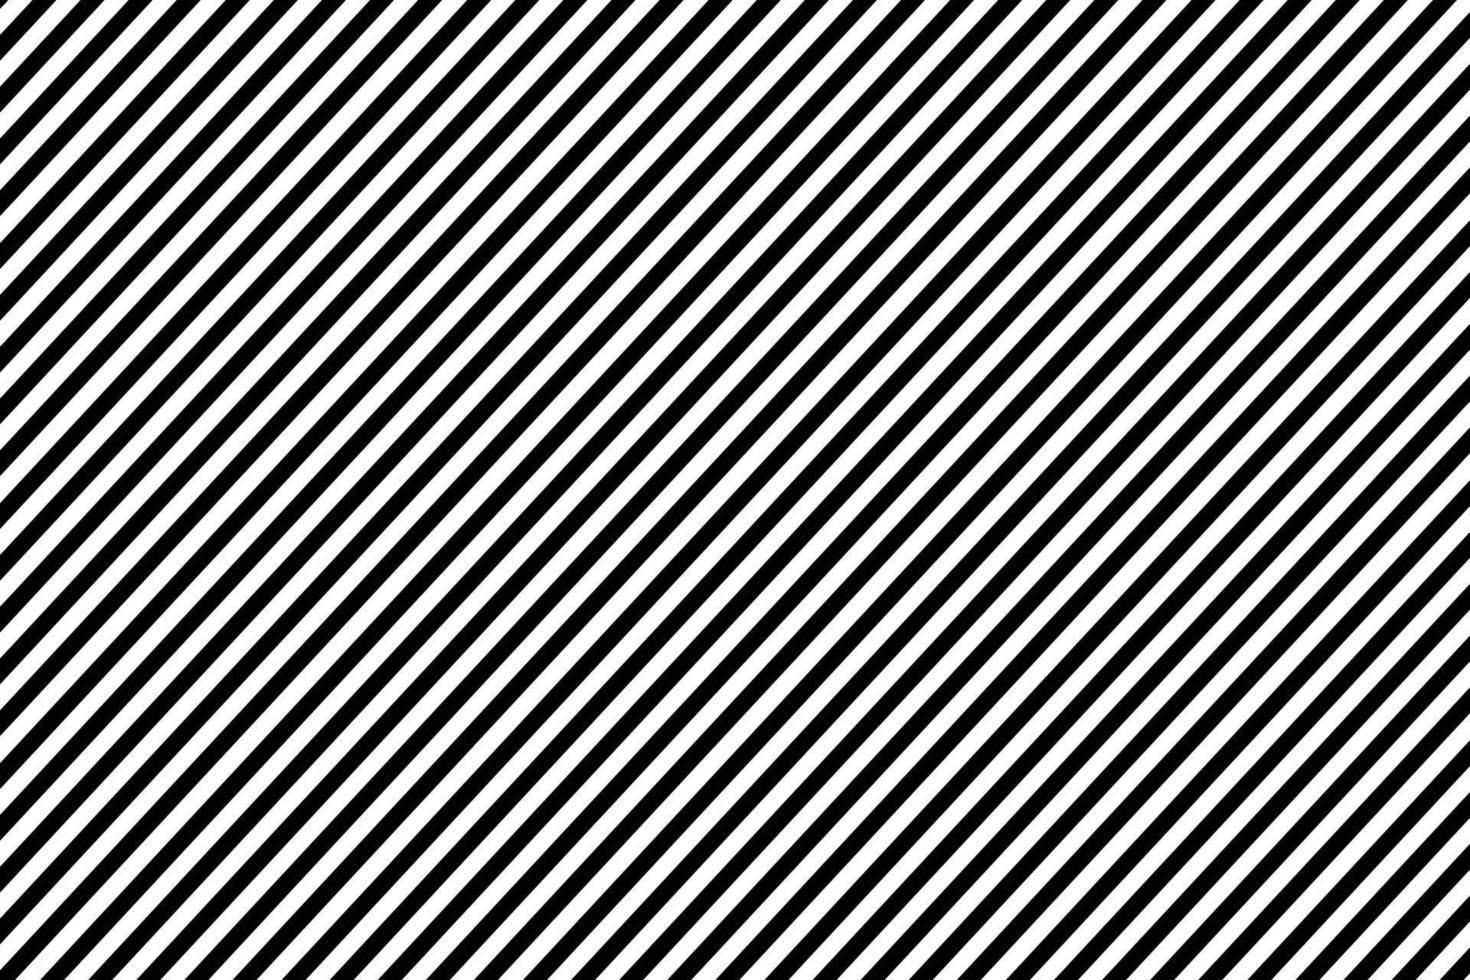 abstract zwart wit meetkundig Rechtdoor patroon ontwerp. vector